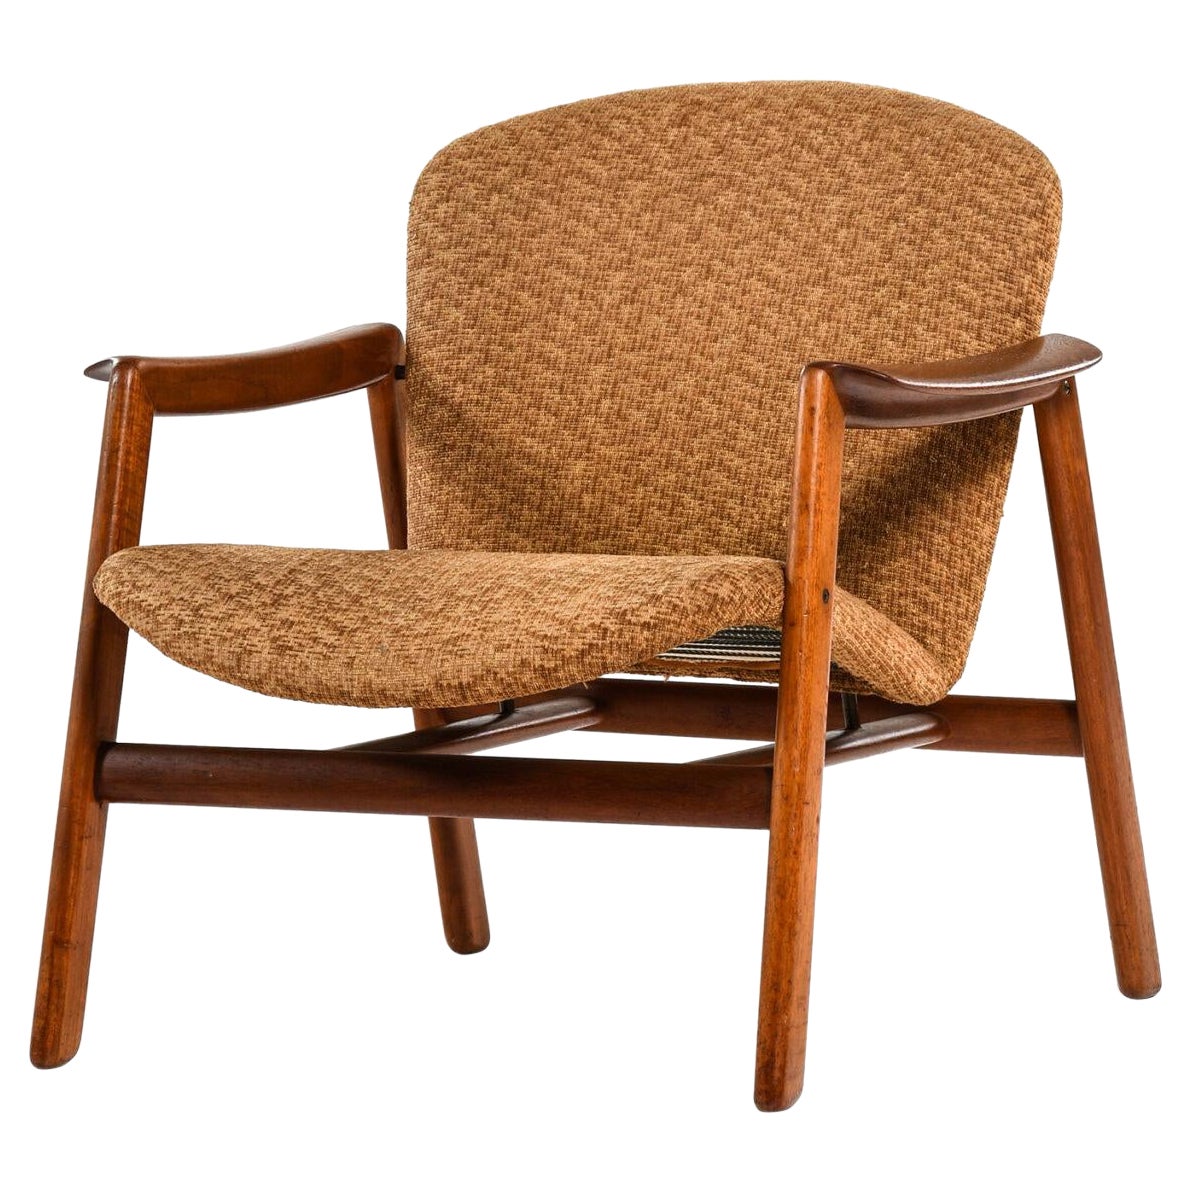 Der Sessel wird in Dänemark hergestellt